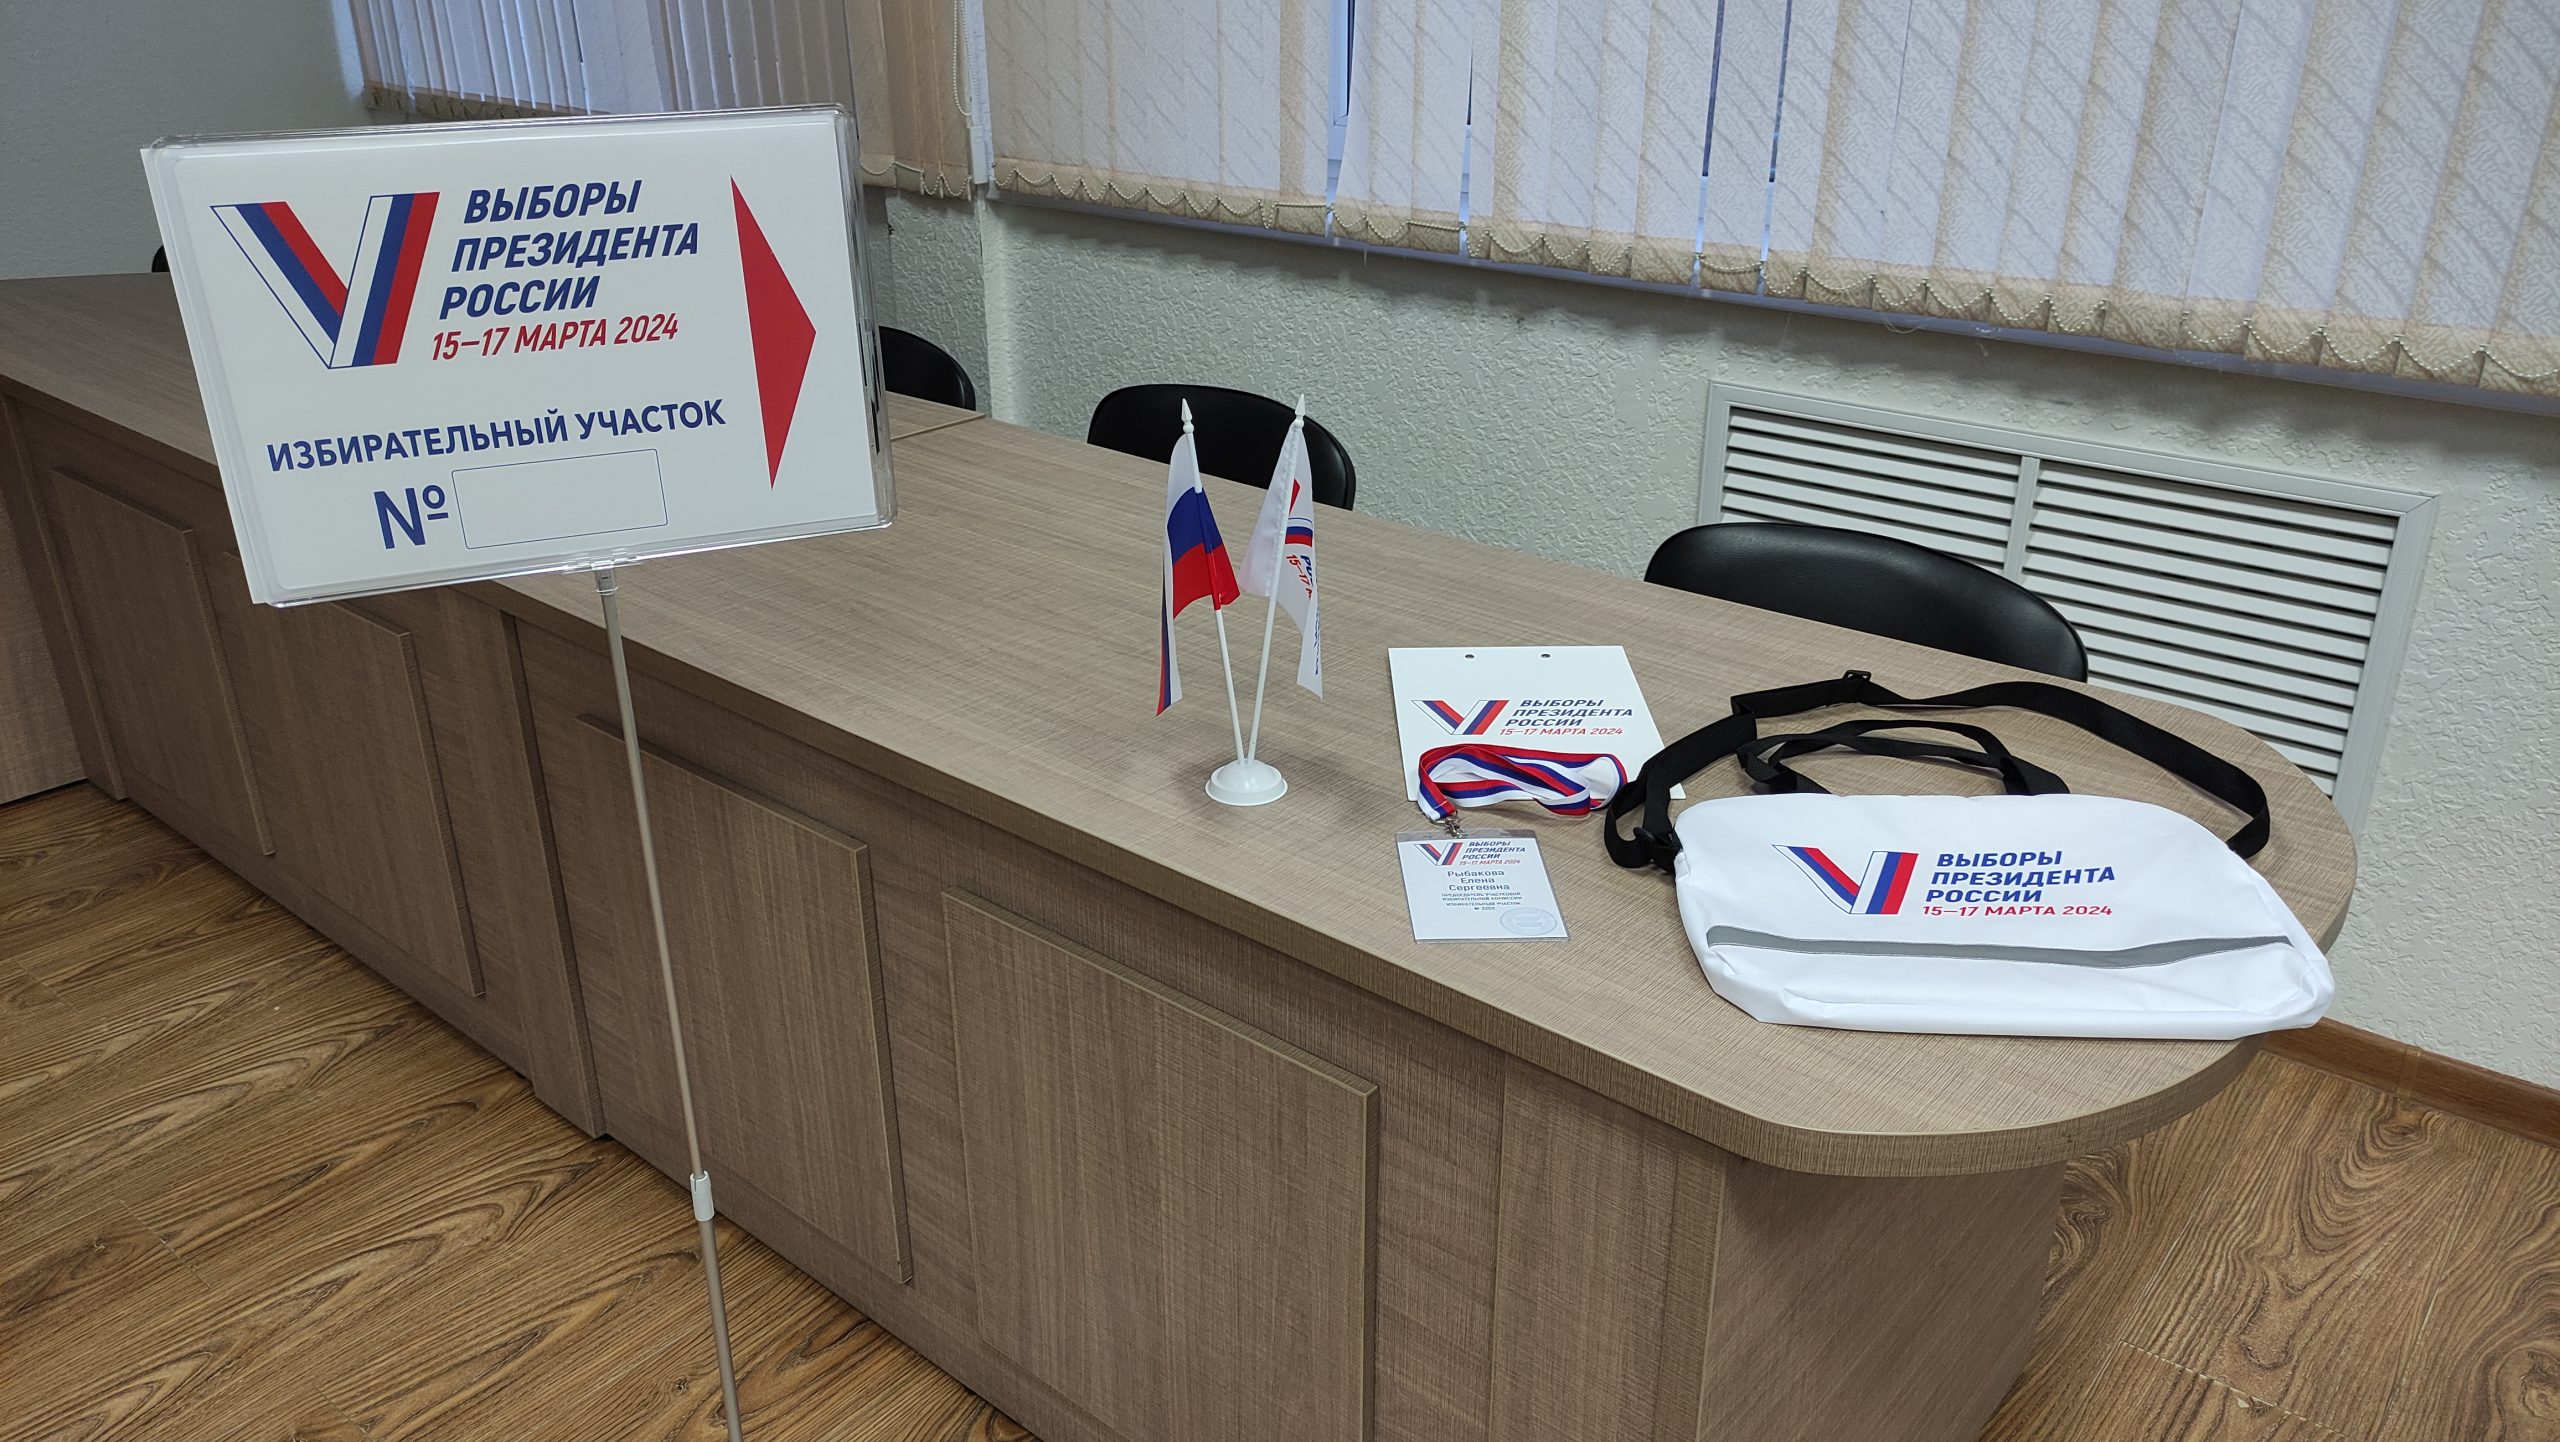 Продолжаются обучающие и организационные мероприятия в рамках подготовки к выборам Президента Российской Федерации, назначенным на 17 марта 2024 года